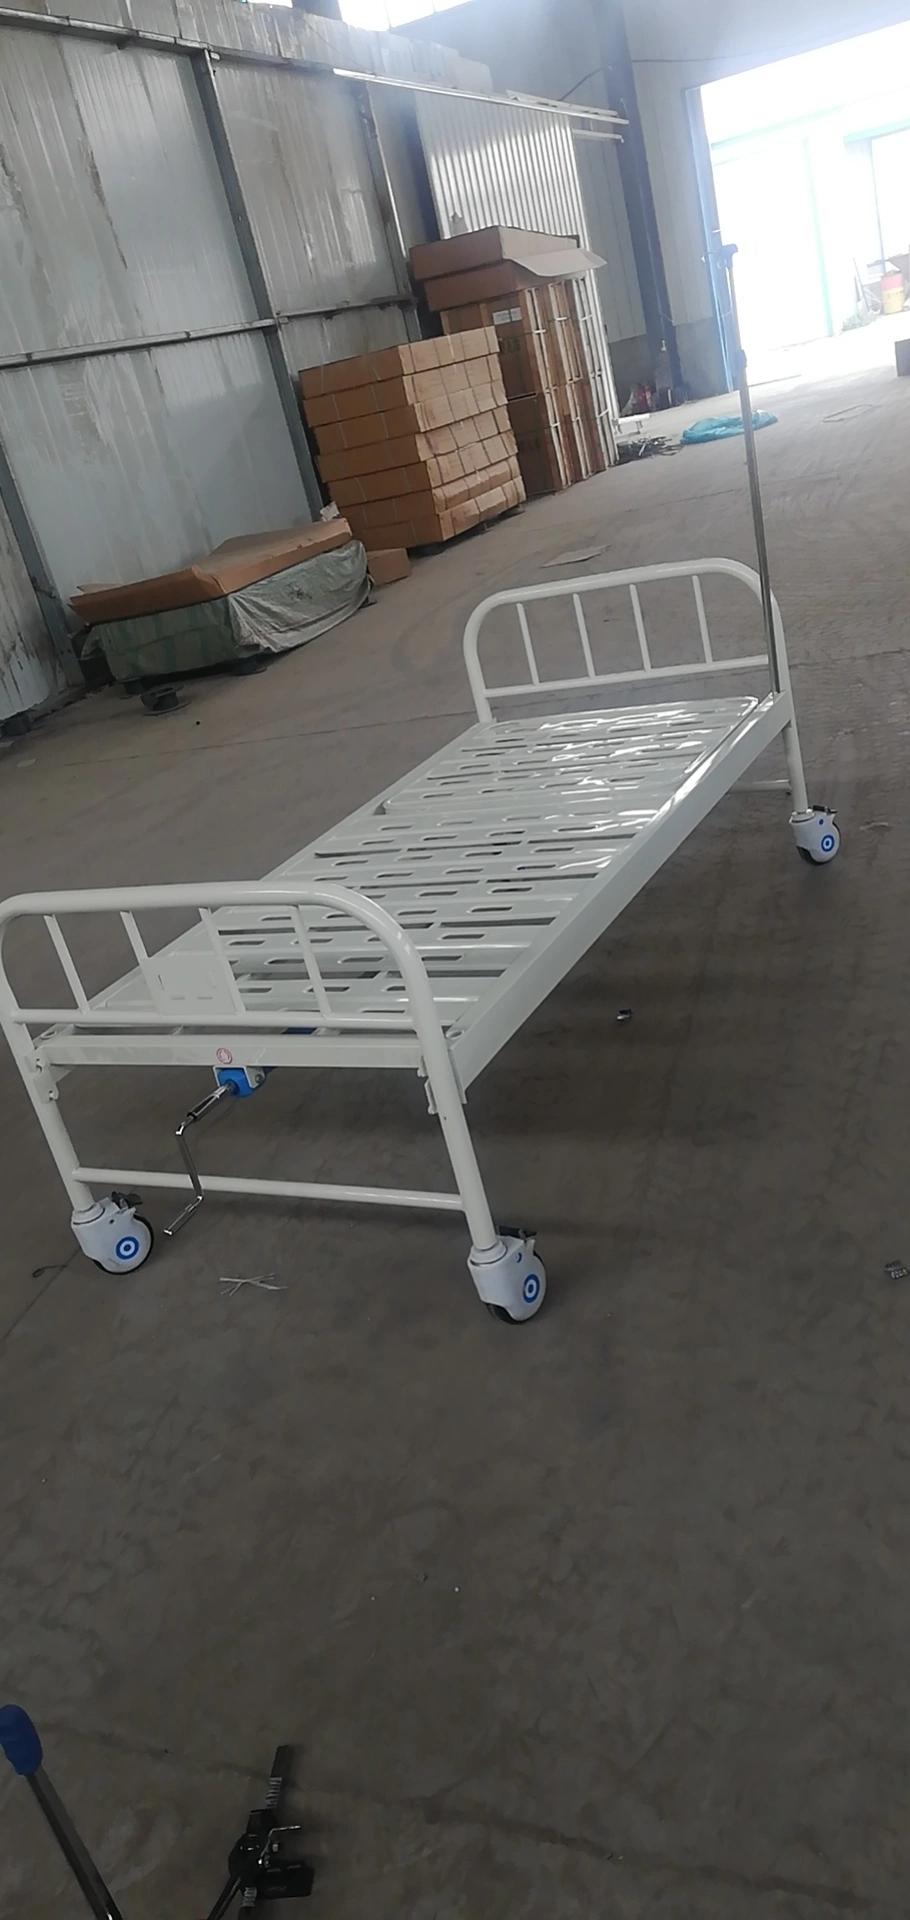 Medical Adjustable Board Single Bed